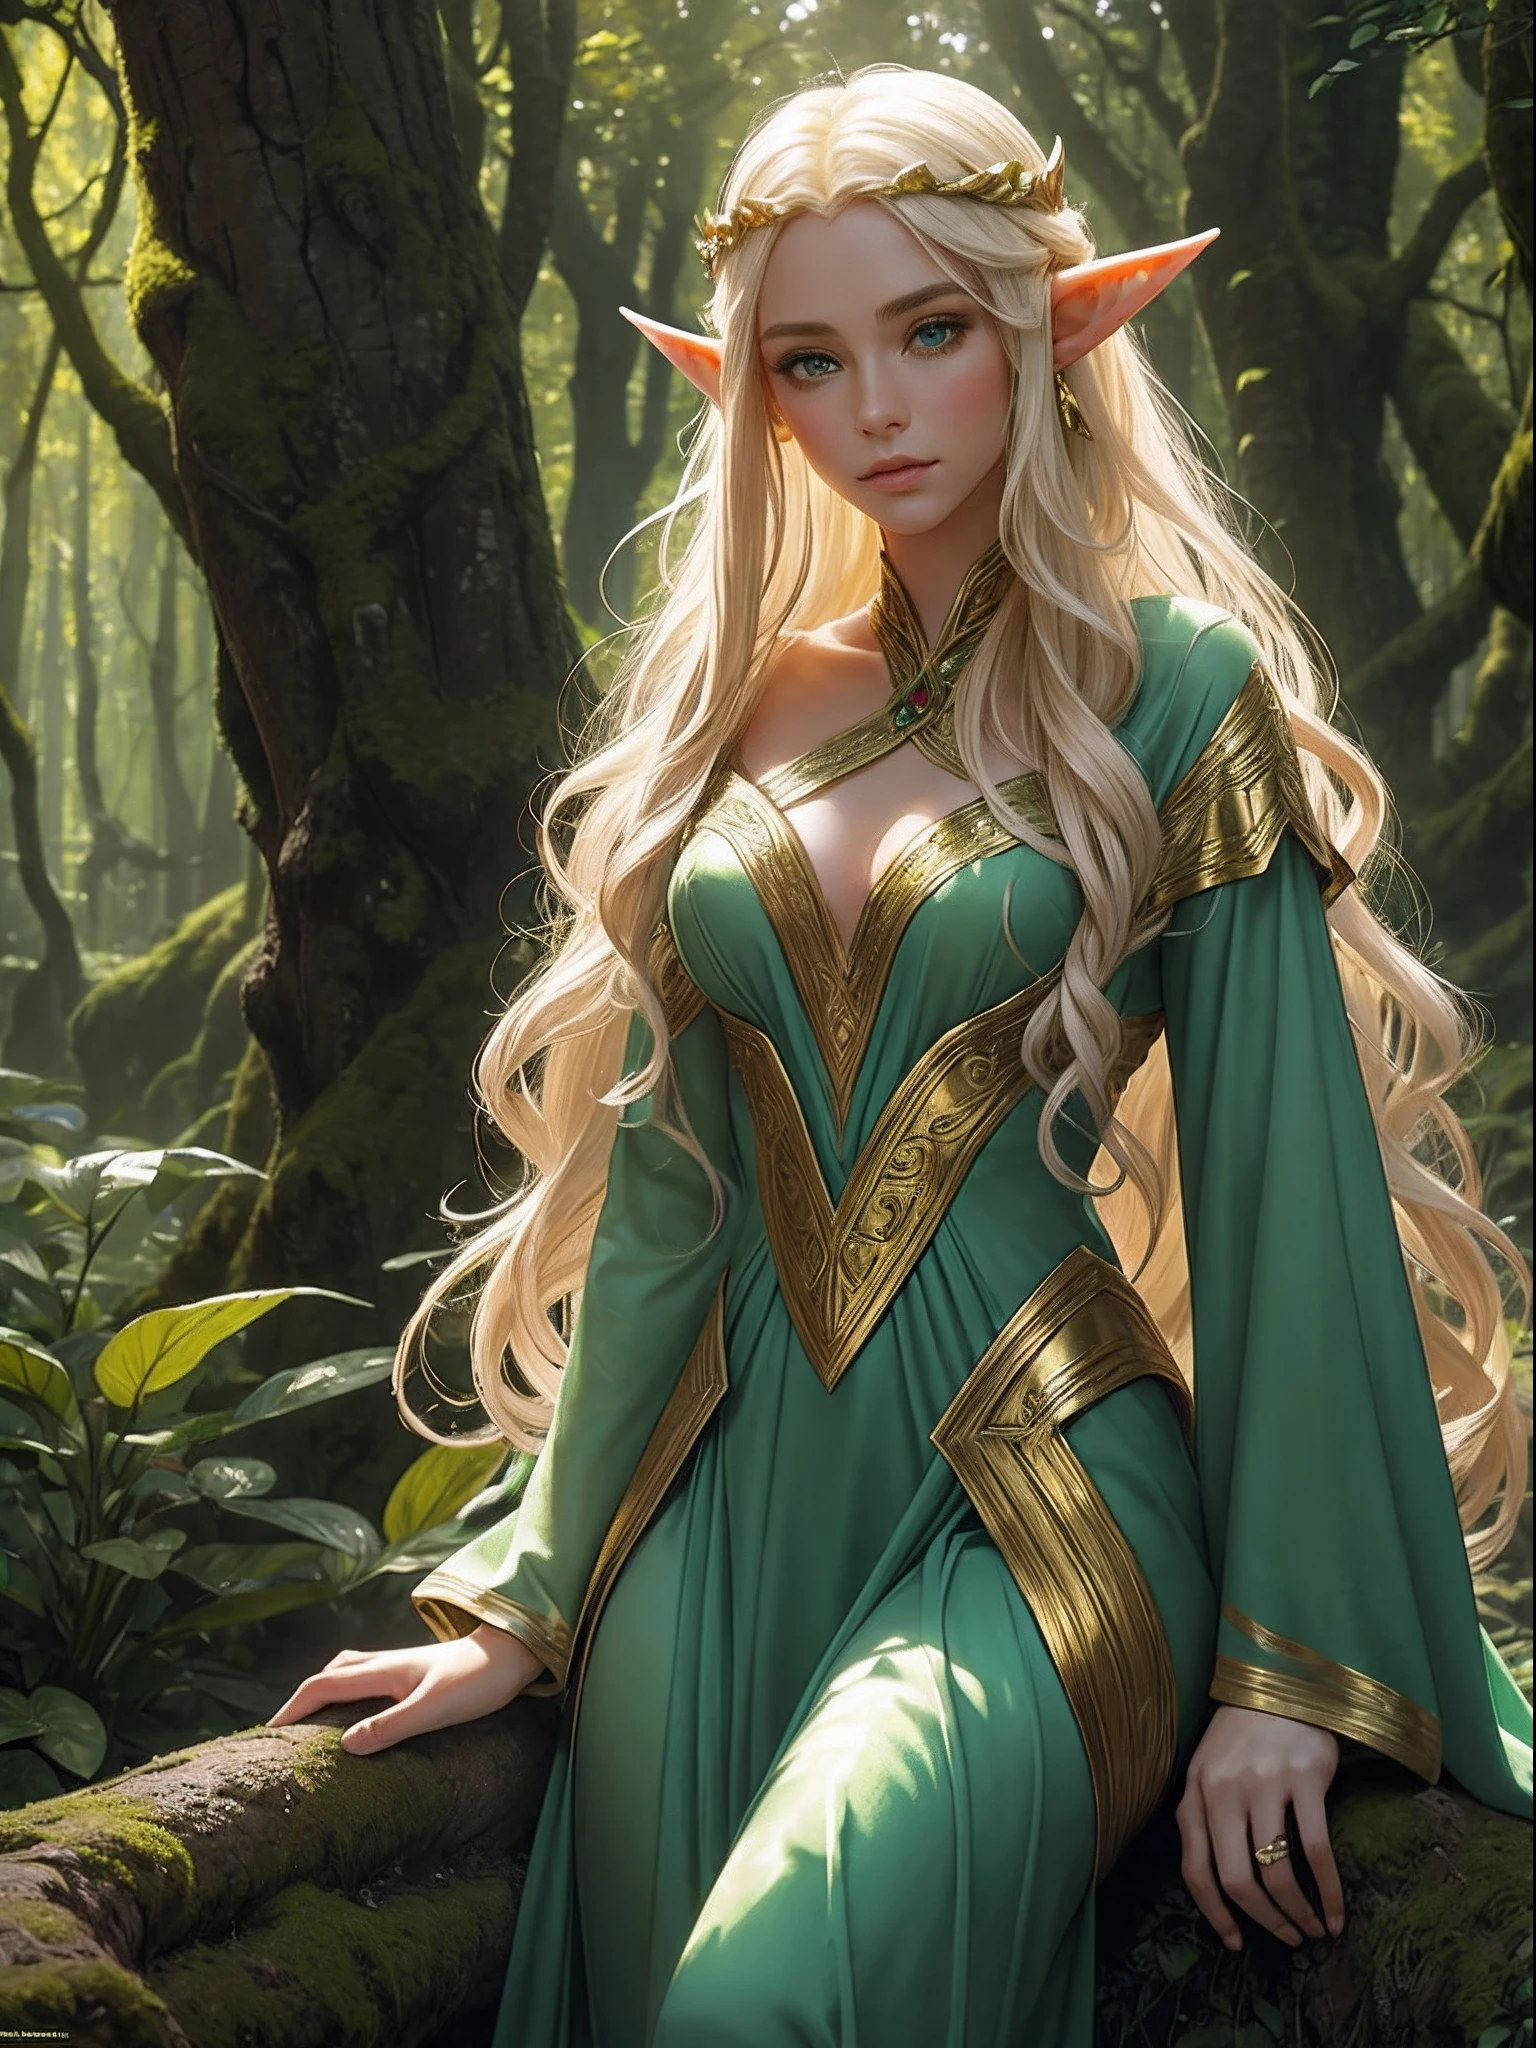 "目光迷人的精灵, 空灵之美, 飄逸的金髮, 尖耳朵, 穿著精緻的精靈服裝, 被神秘森林包圍, 柔和的陽光透過茂密的綠色植物."